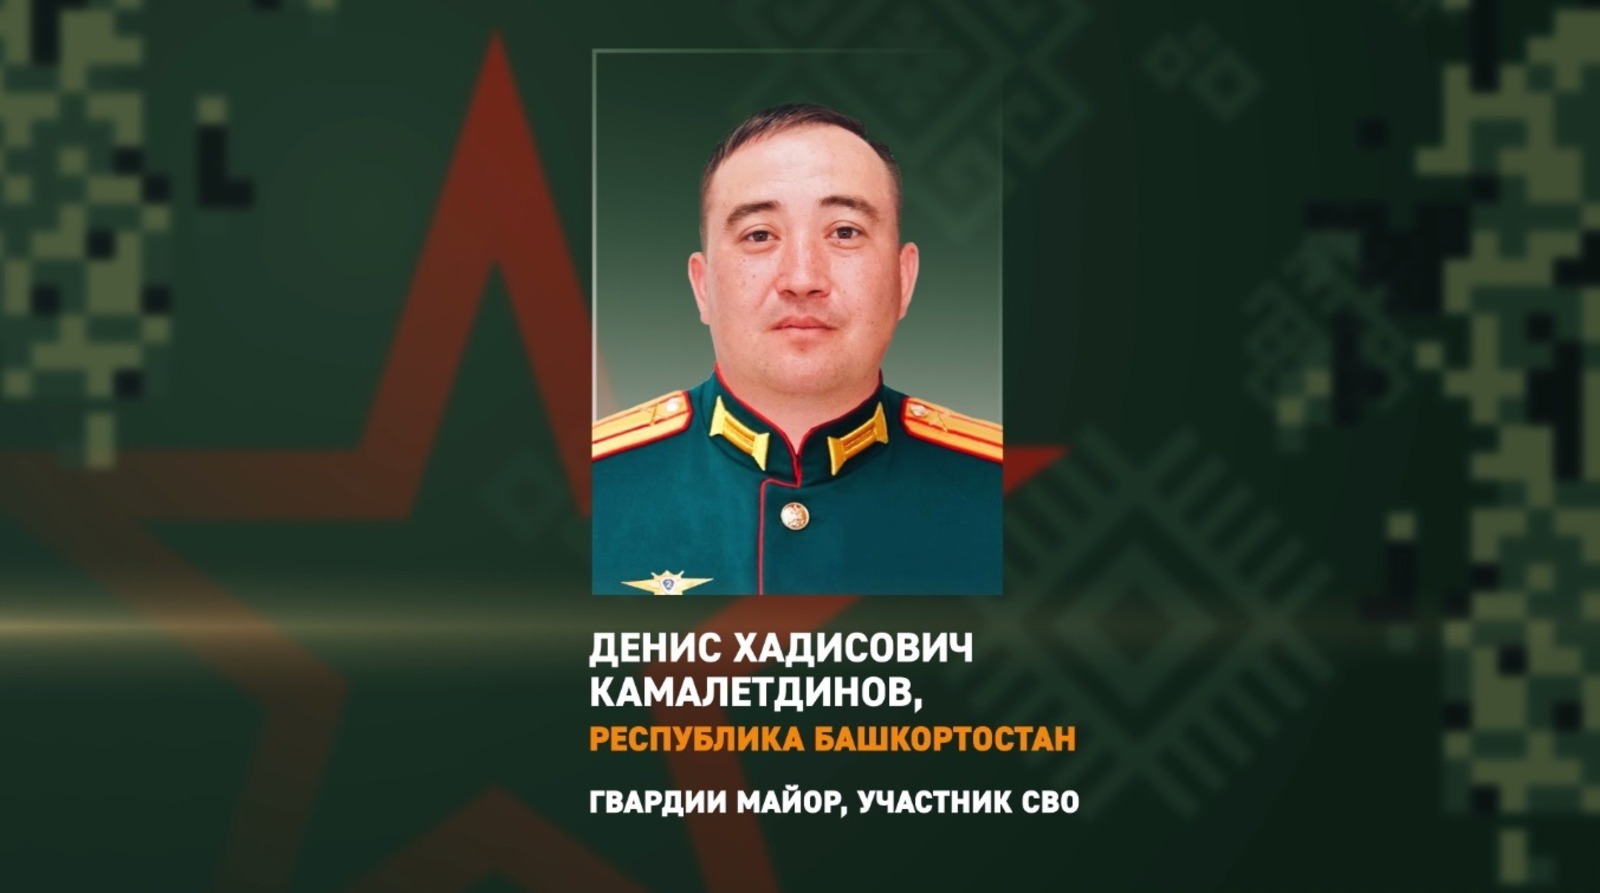 Денис Камалетдинов - участник специальной военной операции.